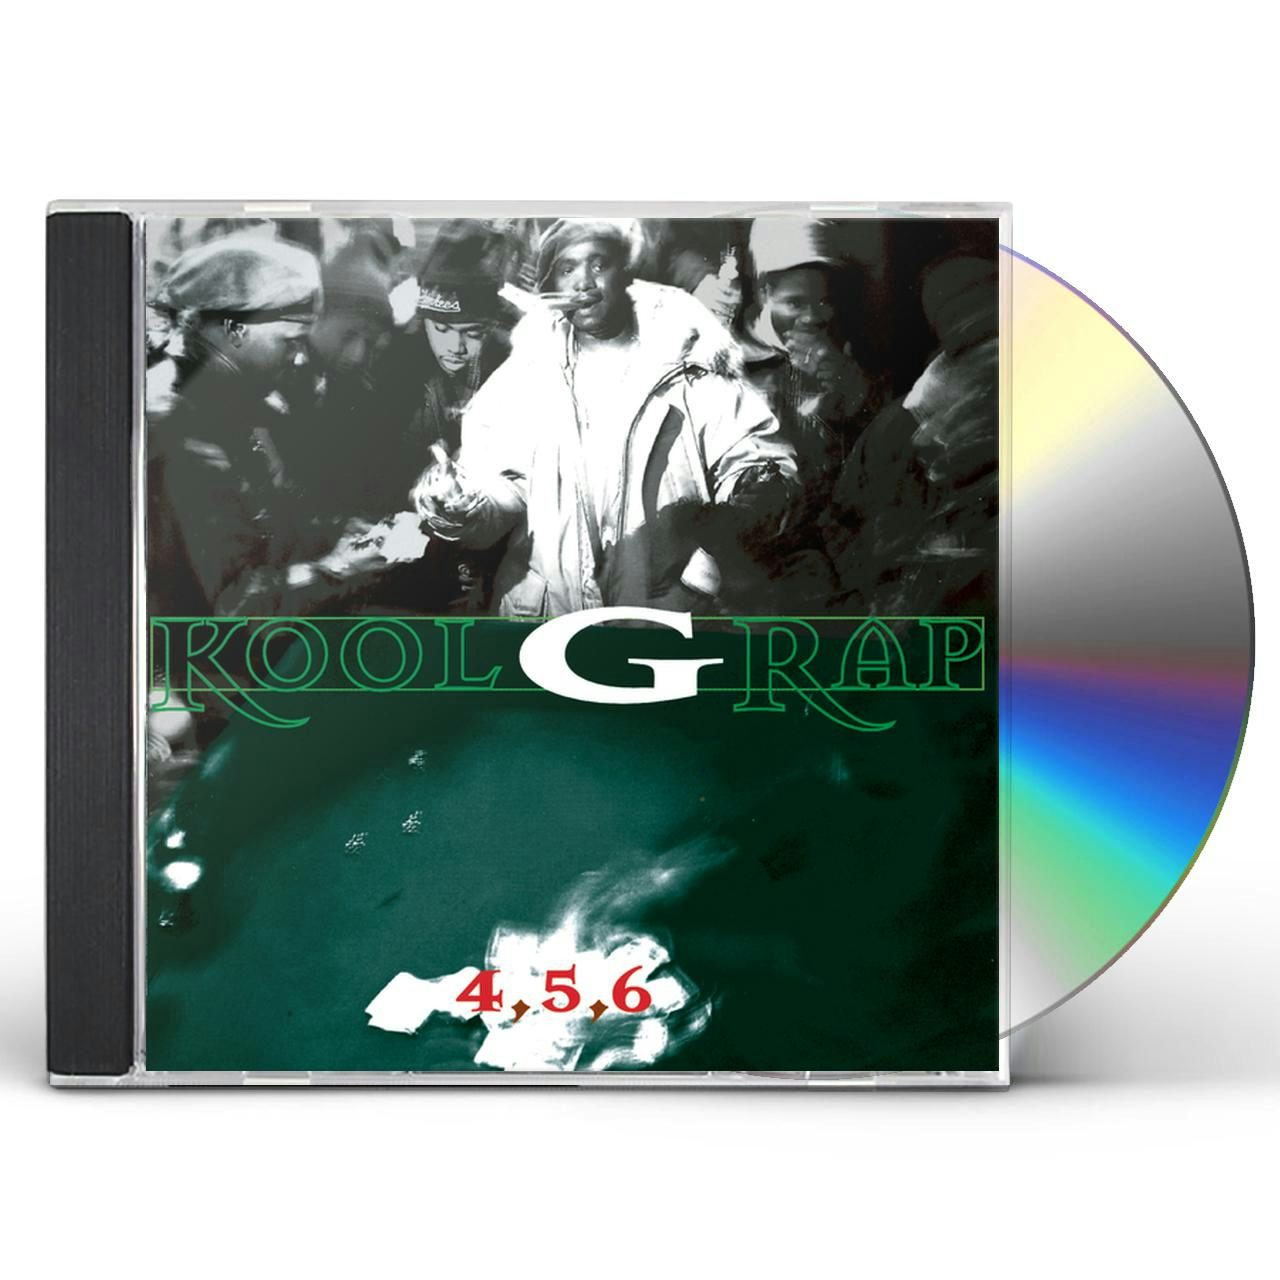 Kool G Rap 4 5 6 CD